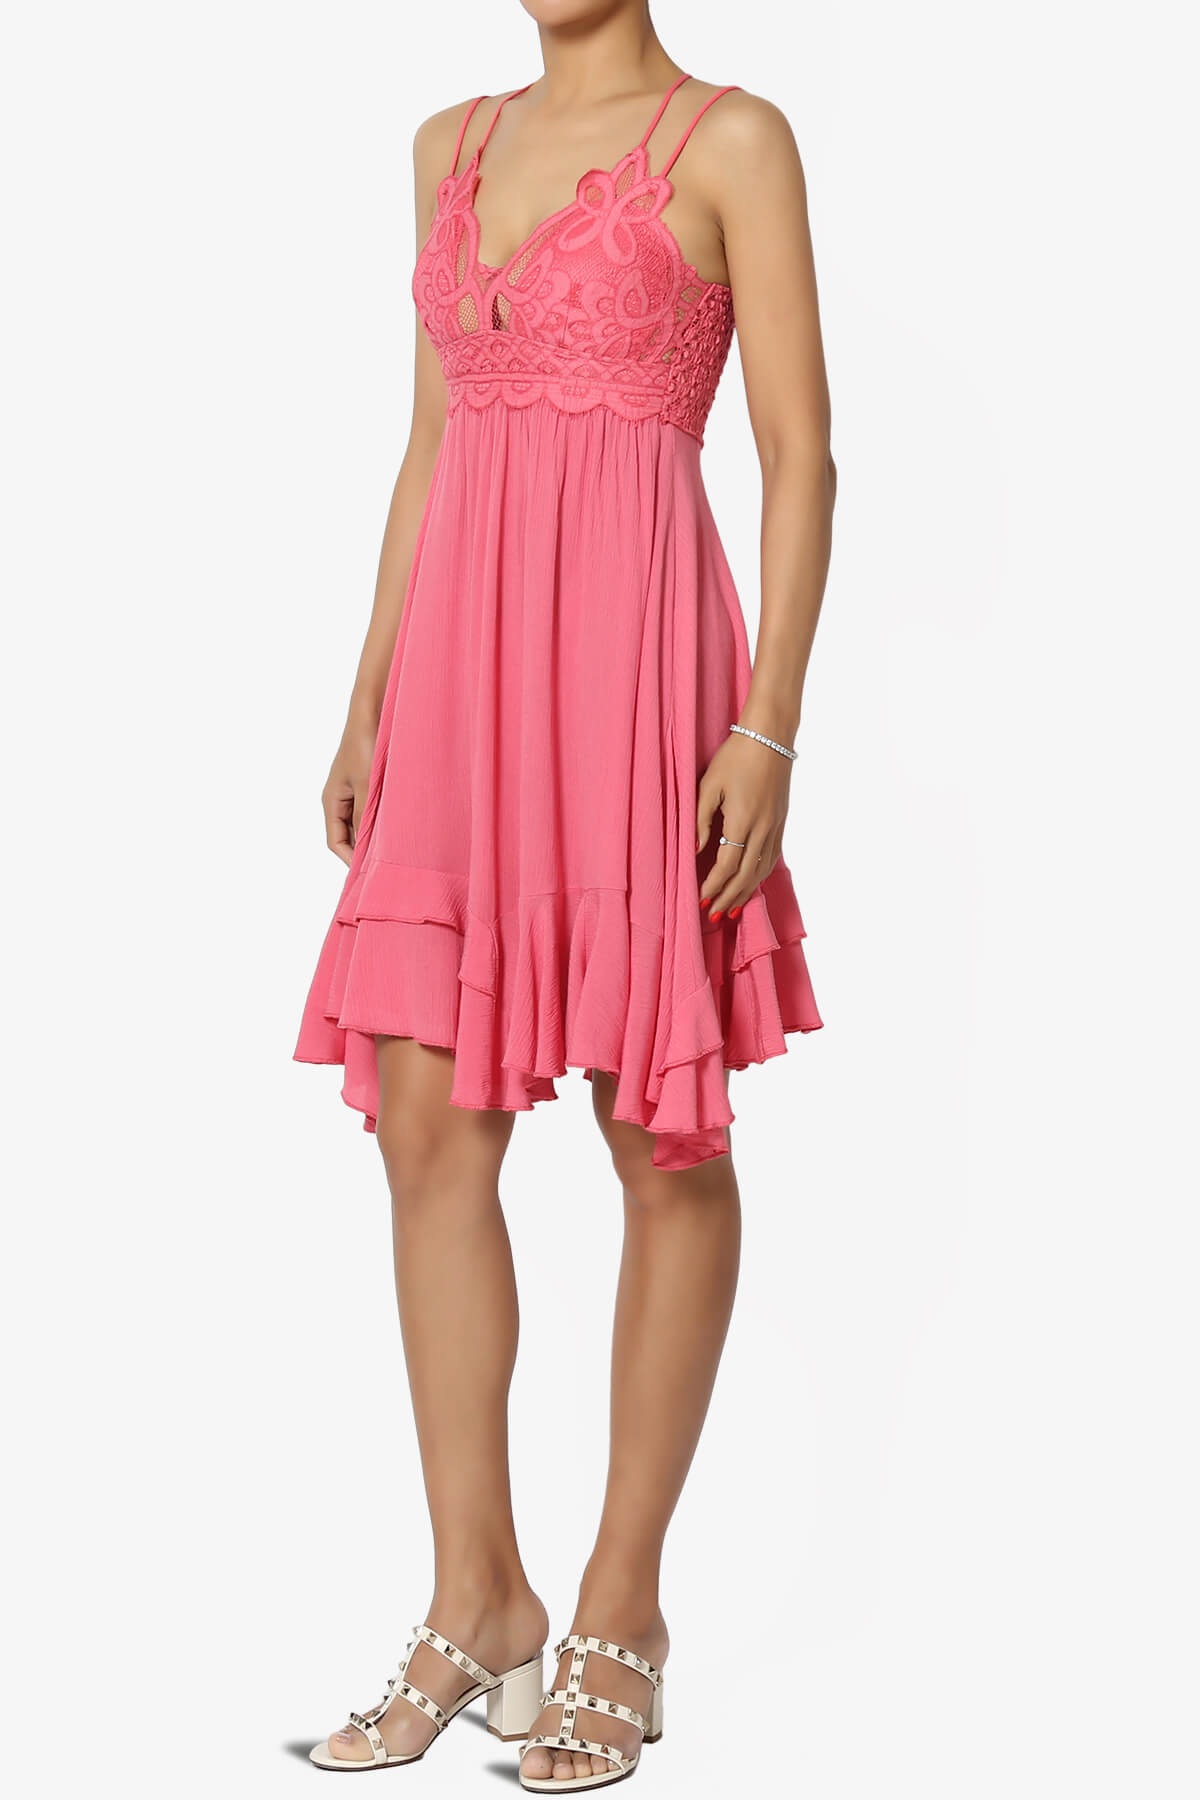 Adella Crochet Ruffle Slip Lace Dress DESERT ROSE_3